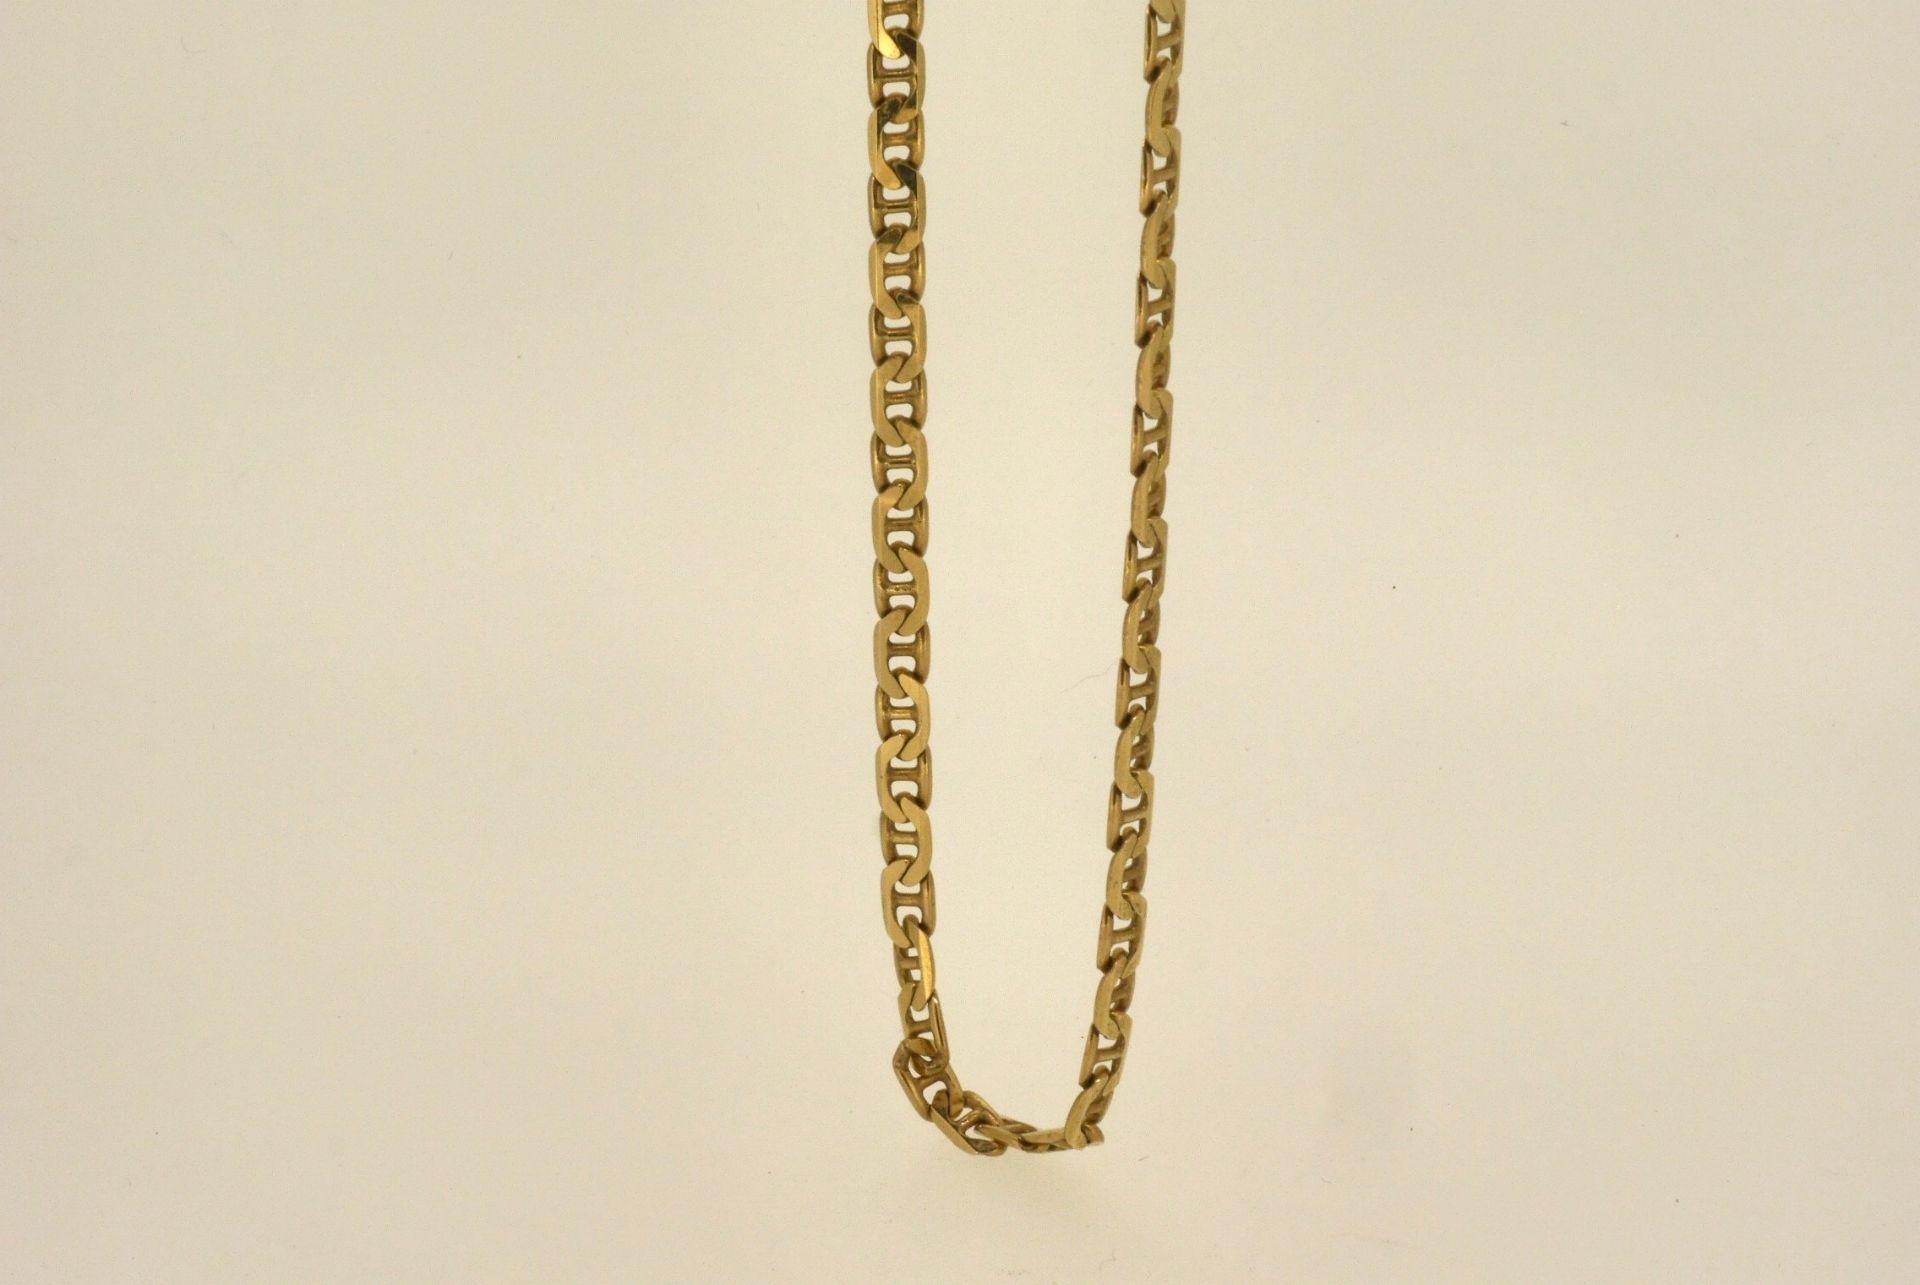 Halskette GG 585, 52 cm, 16,18 Gramm